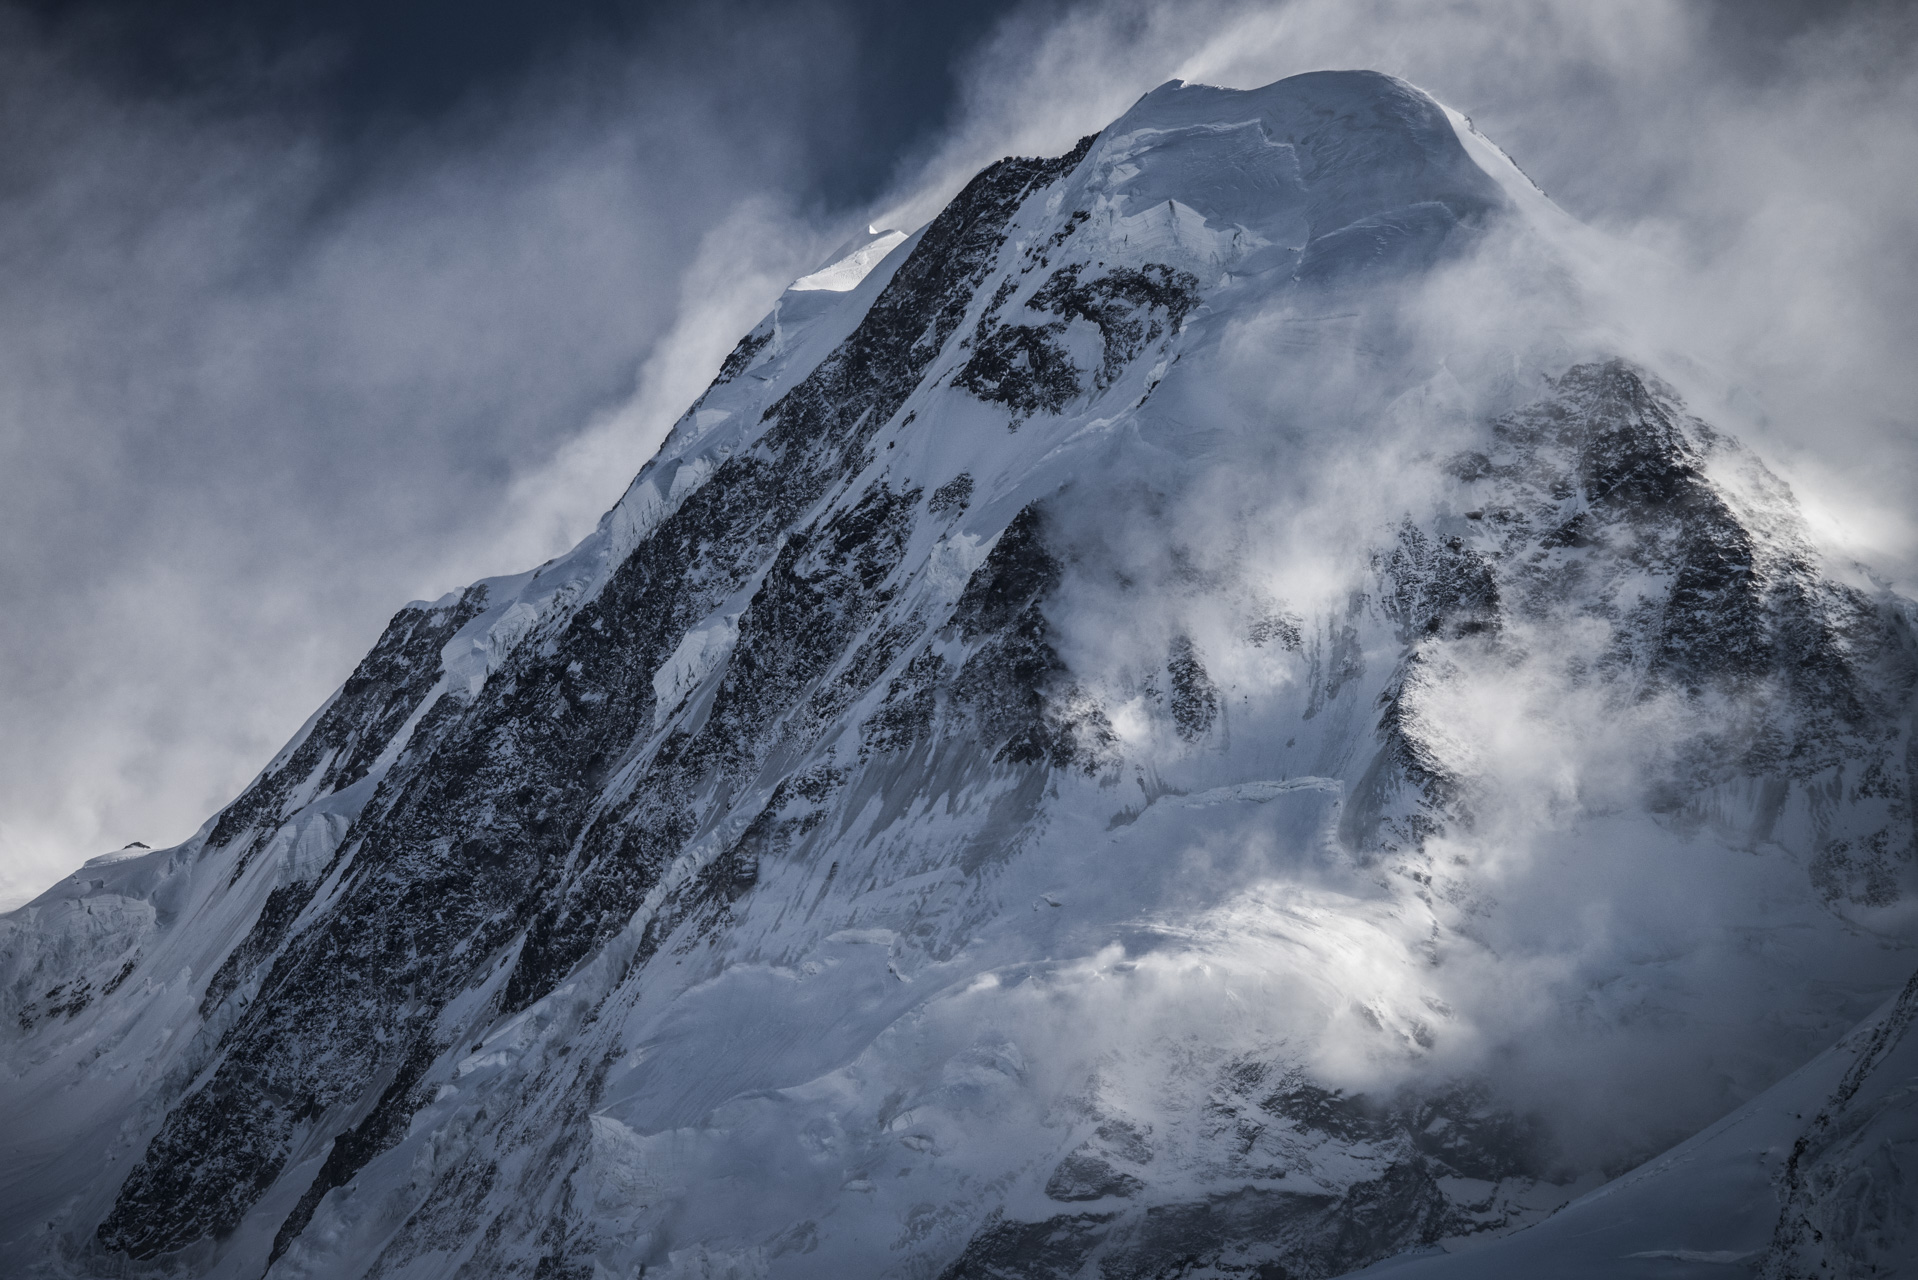 Sommet du Lyskamm dans une mer de nuage - Image de montagne rocheuse enneigée en hiver dans les Alpes Valaisannes à Zermatt